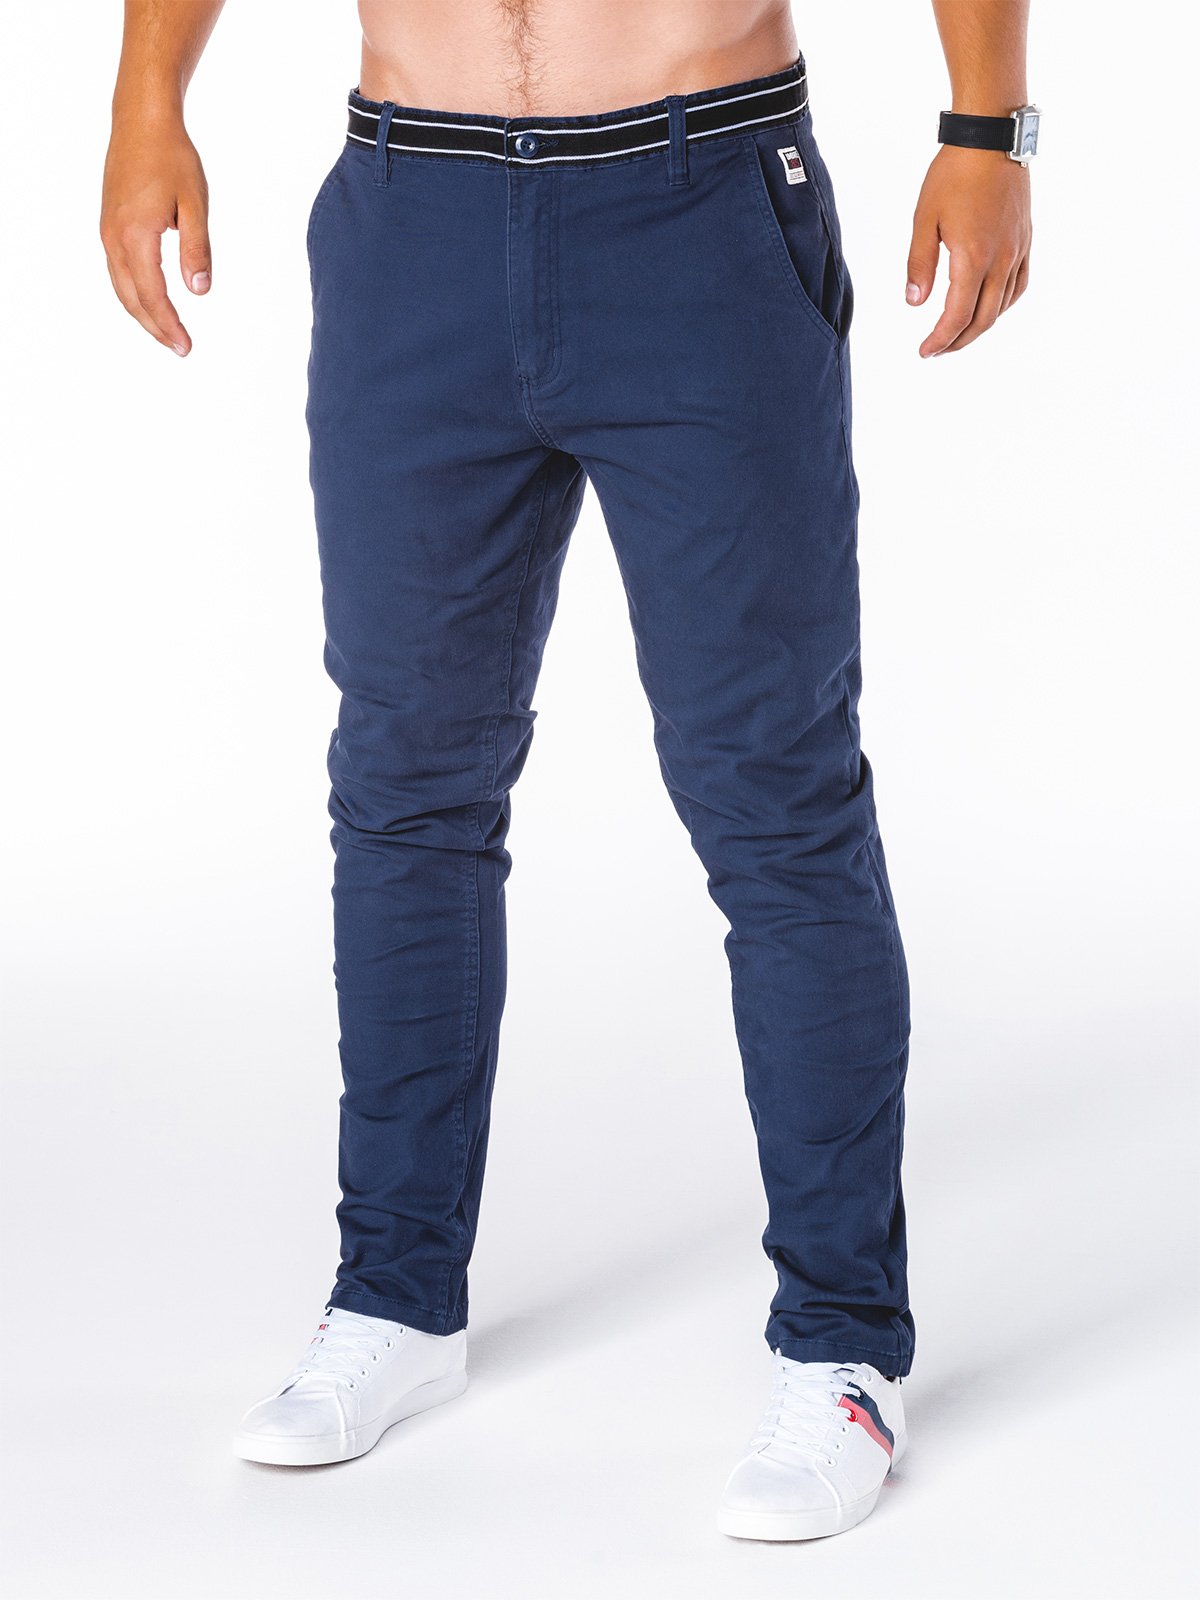 Men's pants Ombre P156